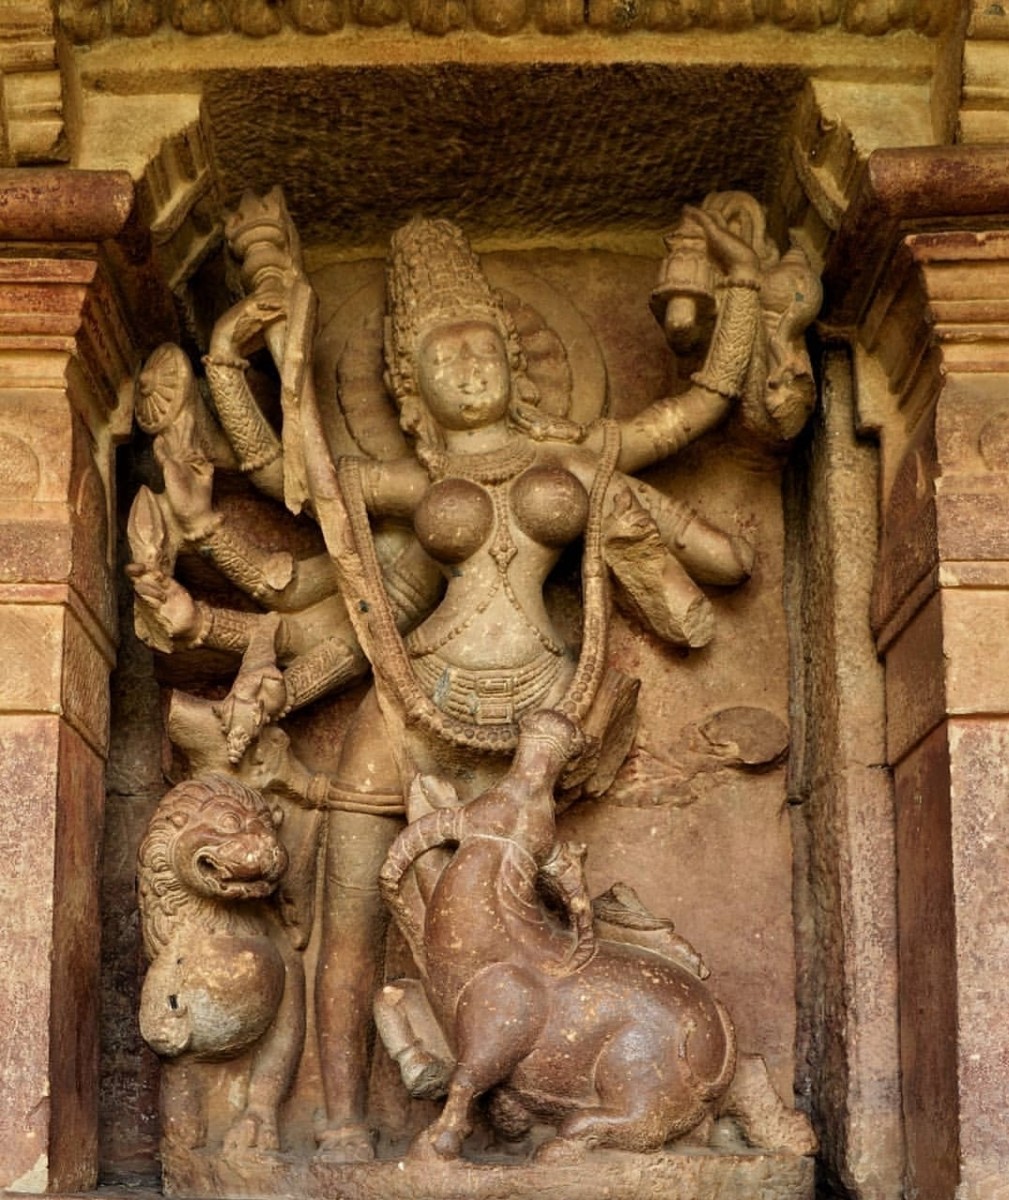 Mahishasumardani-Goddess Durga in a fierce form.